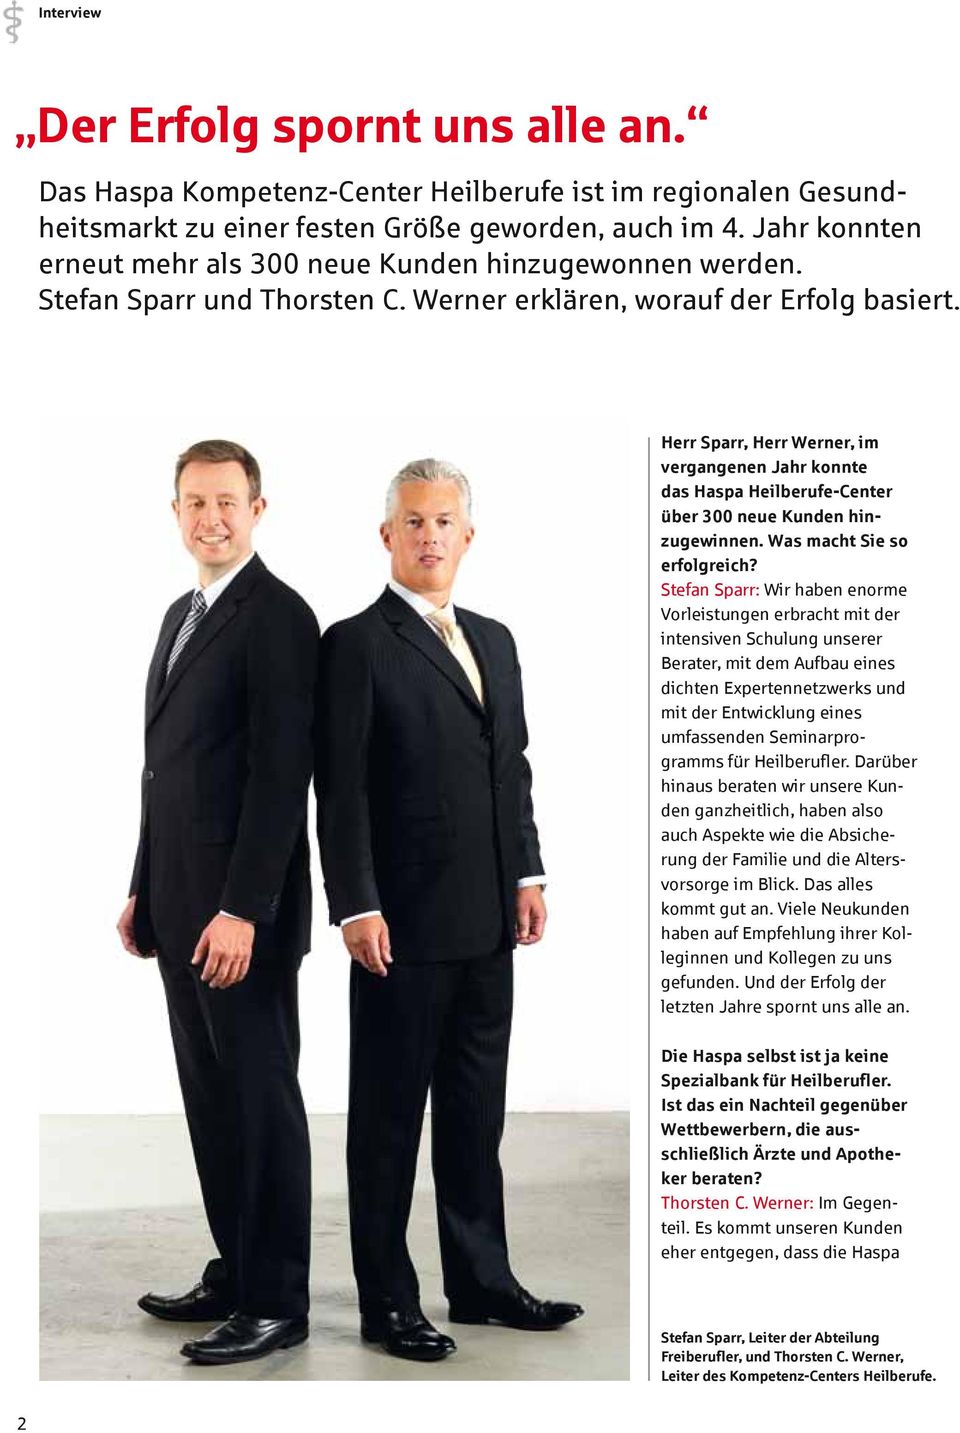 Herr Sparr, Herr Werner, im vergangenen Jahr konnte das Haspa Heilberufe-Center über 300 neue Kunden hinzugewinnen. Was macht Sie so erfolgreich?